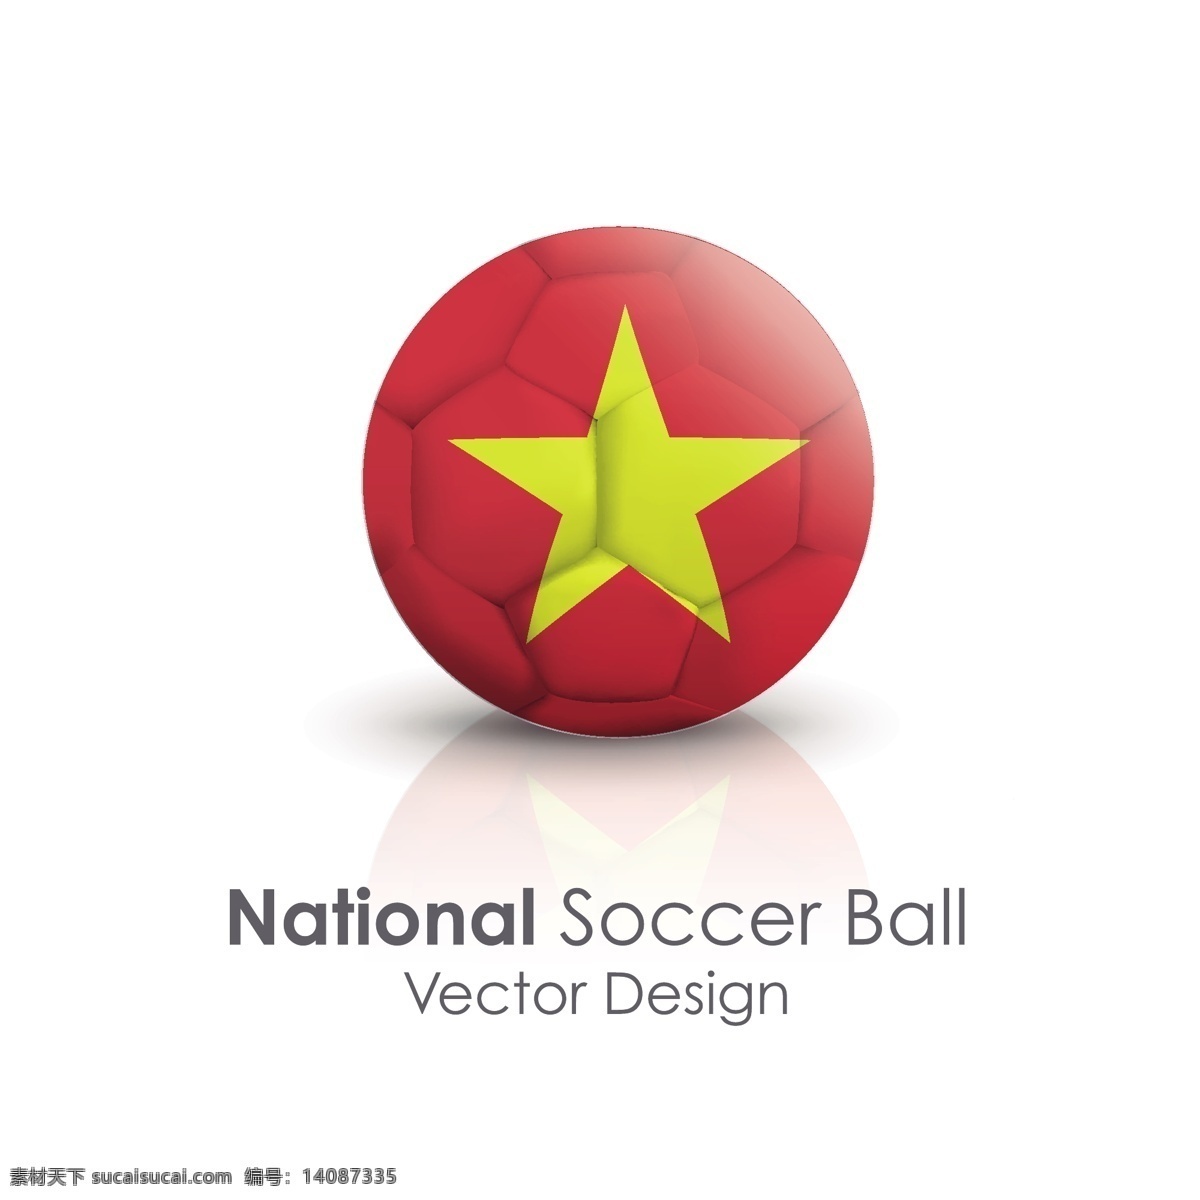 越南 国旗 足球 矢量 越南国旗 矢量素材 黄色五角星 红色球体 红色足球 红色行星插图 立体足球